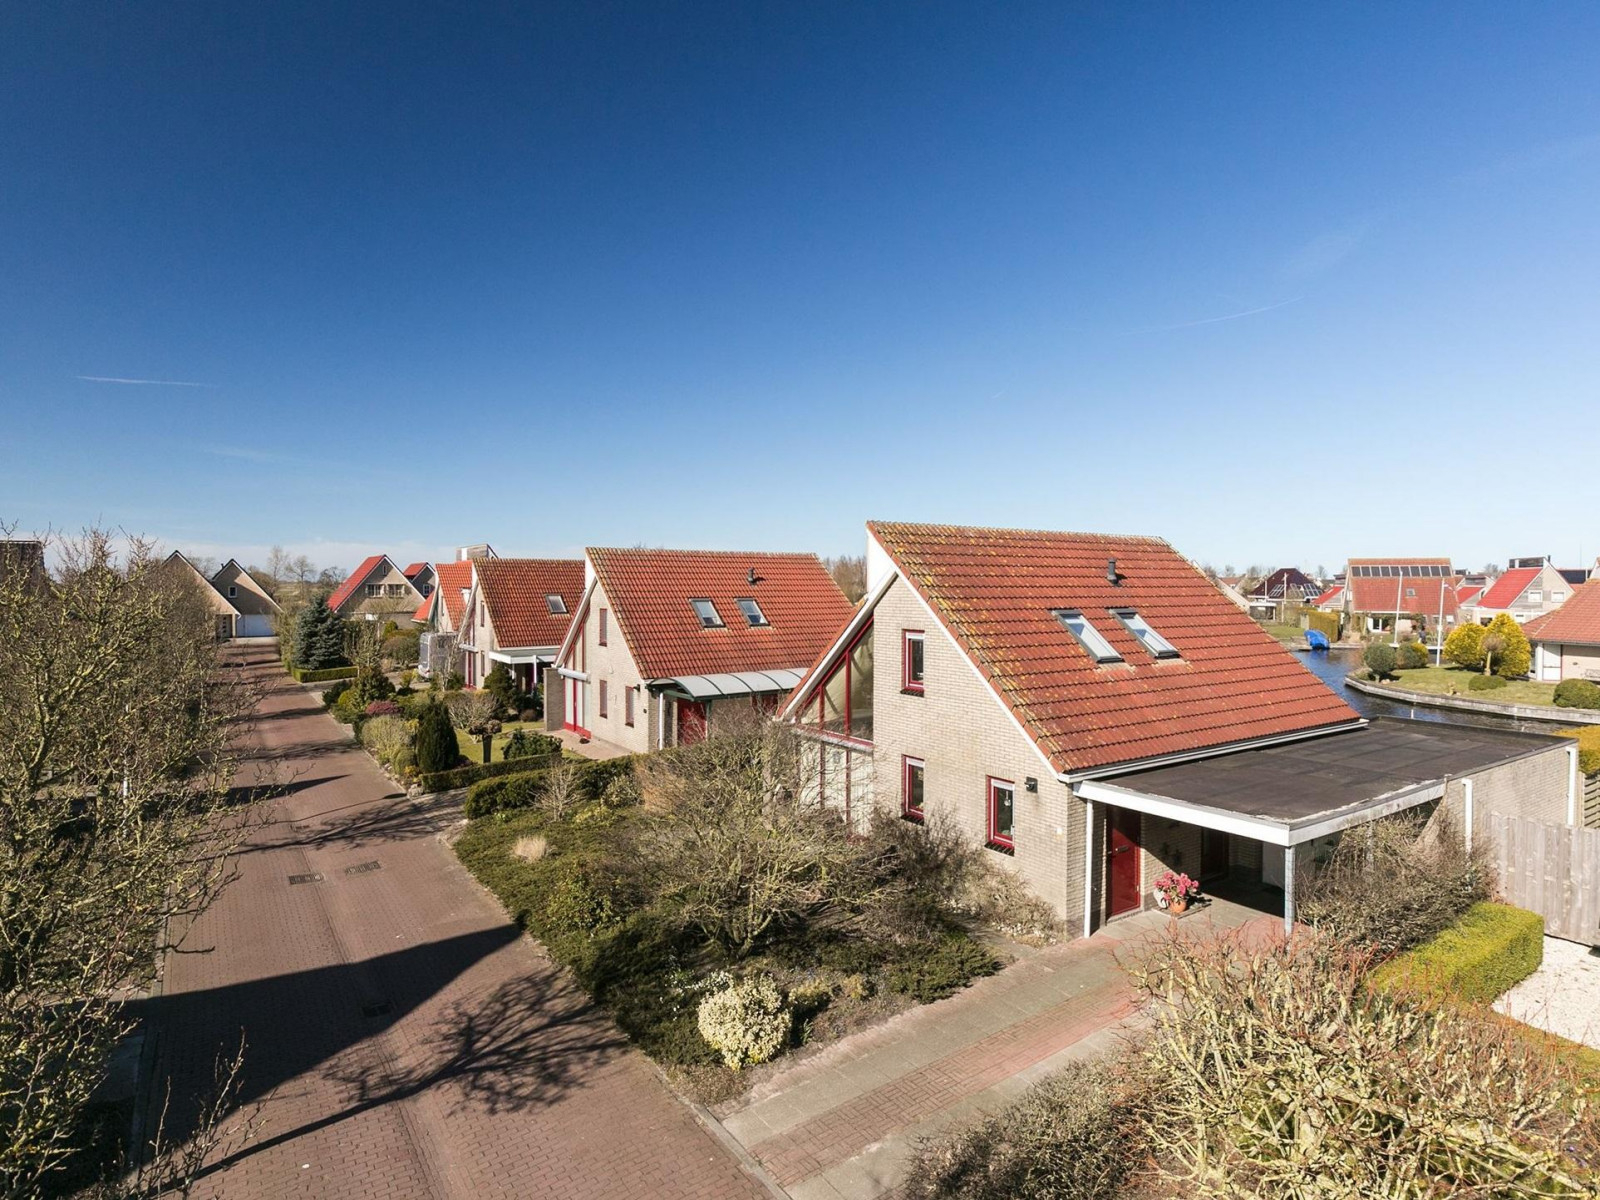 Luxe 6 persoons villa in Koudum nabij mooie Friese mere